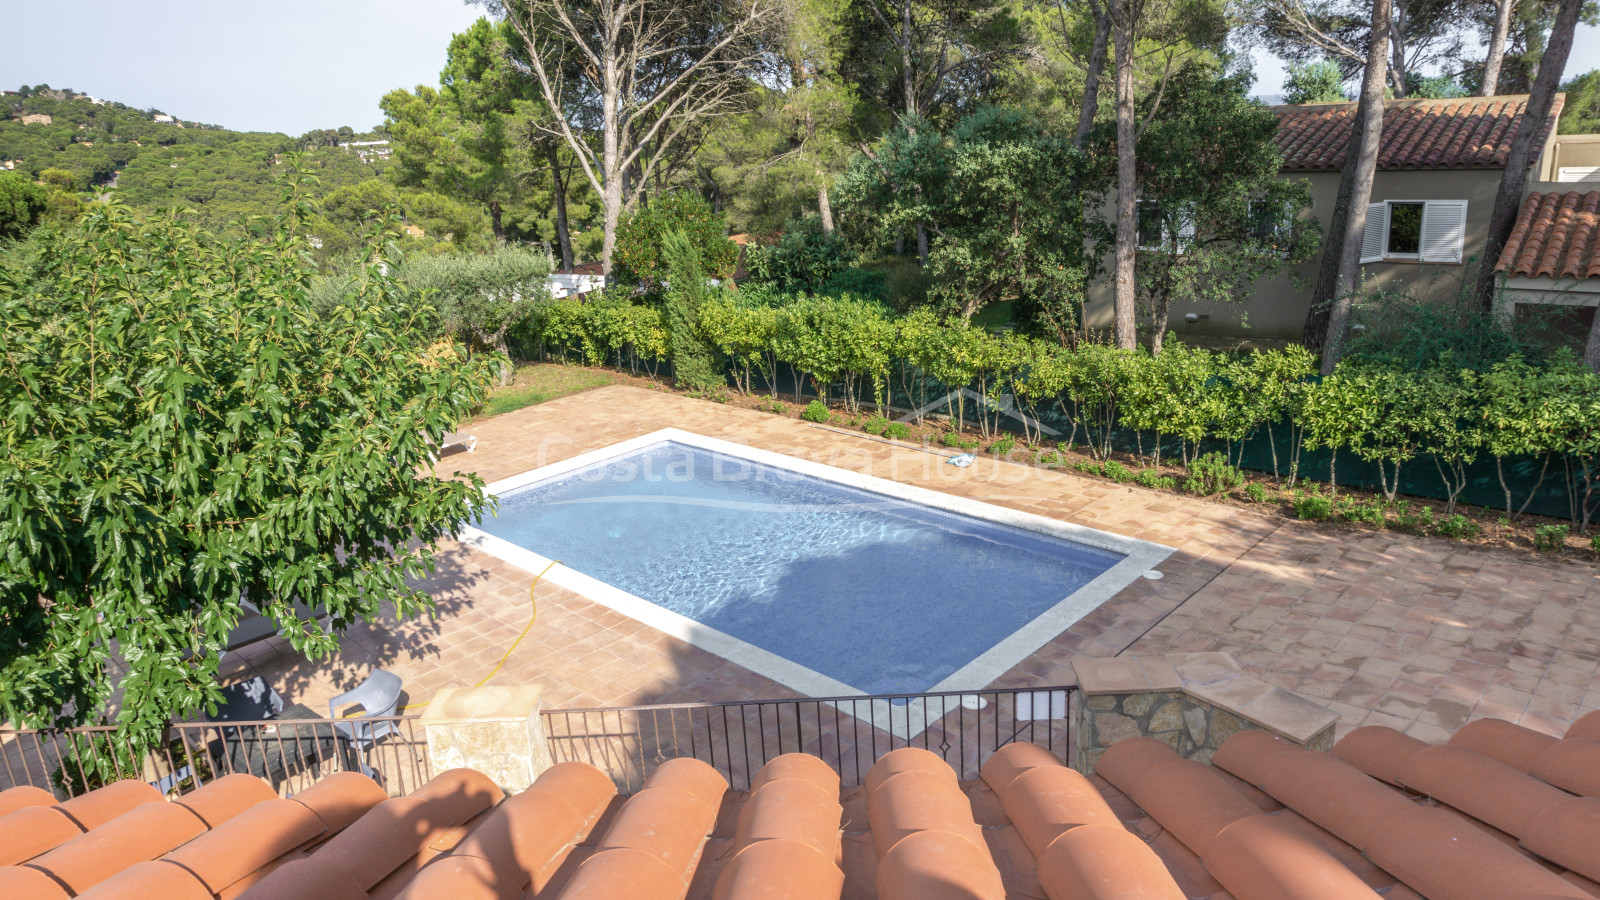 Maison avec piscine et jardin à vendre à Tamariu, à 1 km de la plage, sur un terrain de 1600 m².